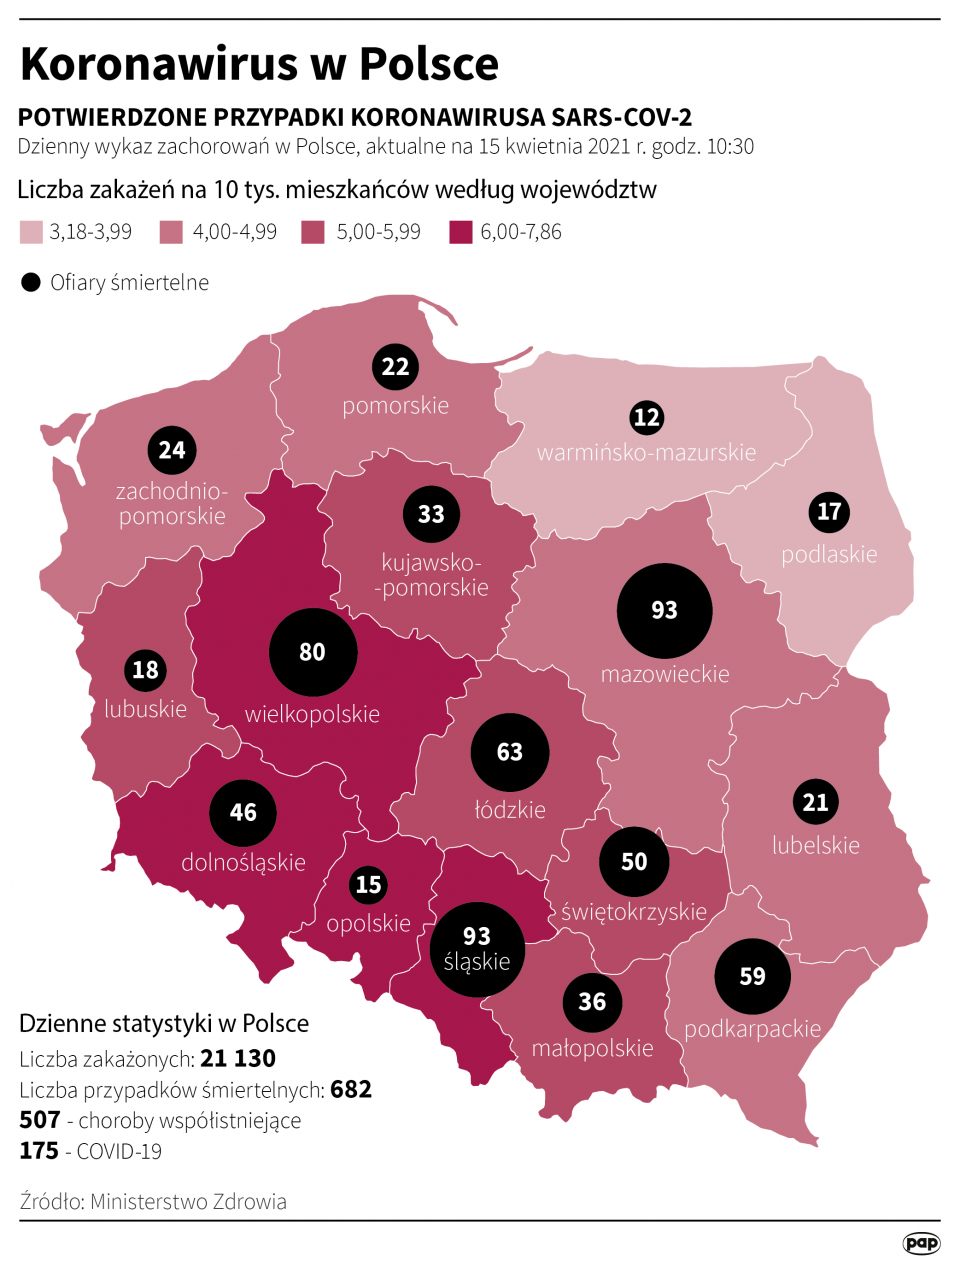 Koronawirus w Polsce stan na 15 kwietnia [autor: Maciej Zieliński, źródło: PAP]